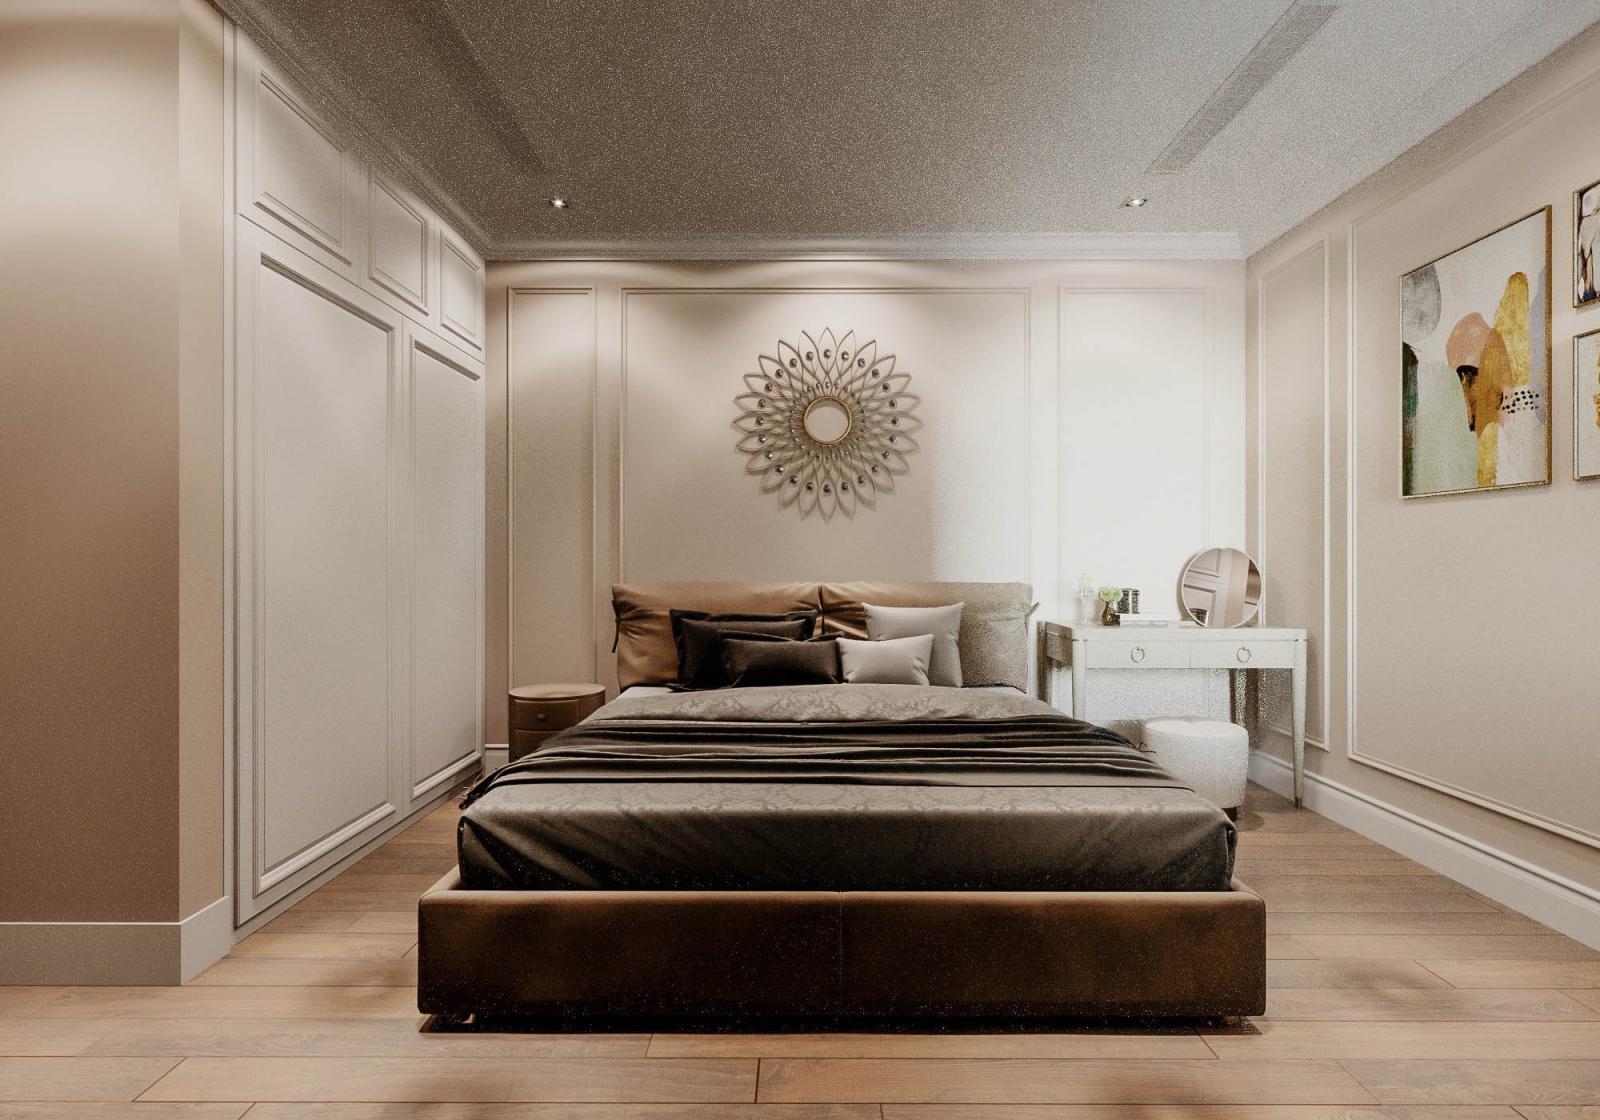 Phòng ngủ master rộng rãi, sử dụng bảng màu ấm áp, thư giãn. Lối thiết kế tối giản nhưng sang trọng được ứng dụng linh hoạt.